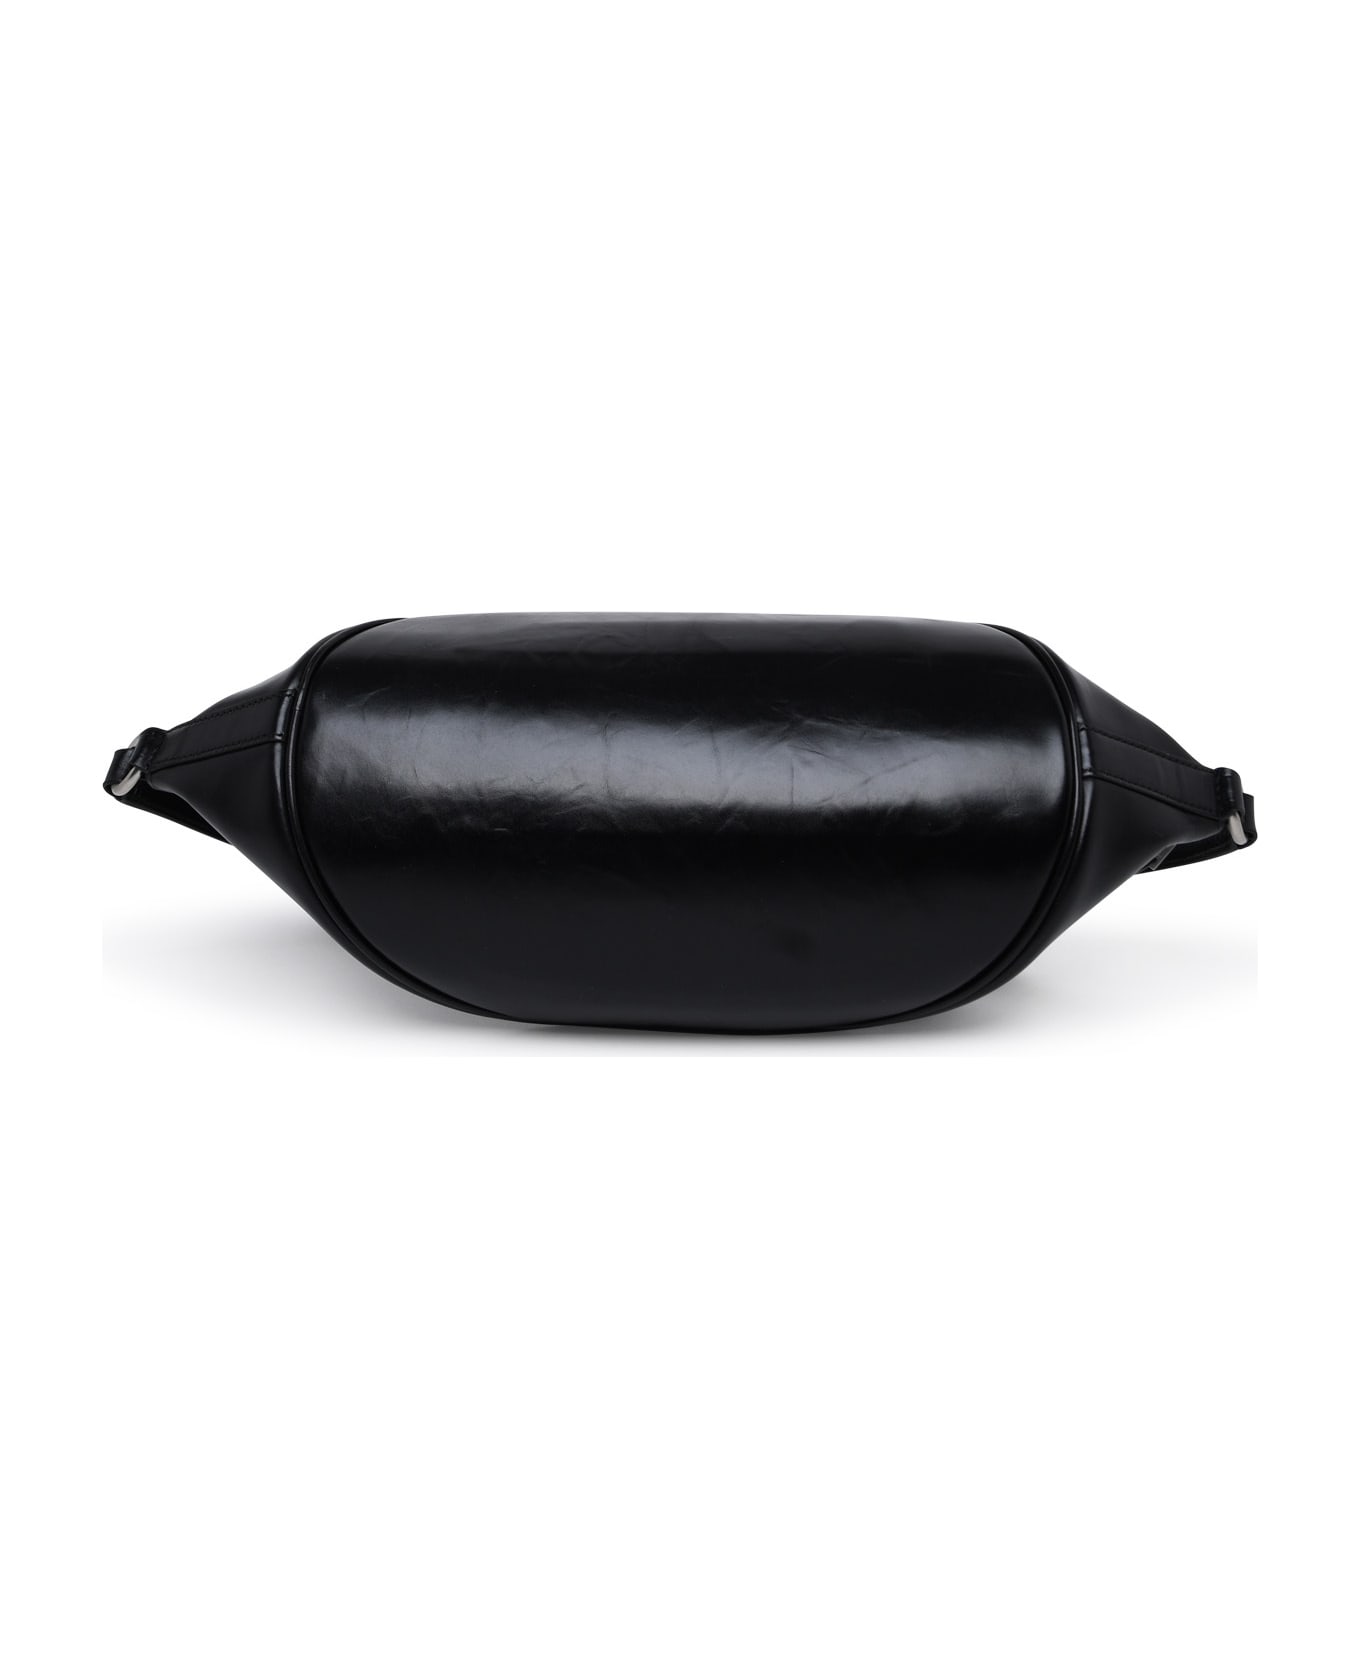 Jil Sander Black Leather Belt Bag - Black バッグ